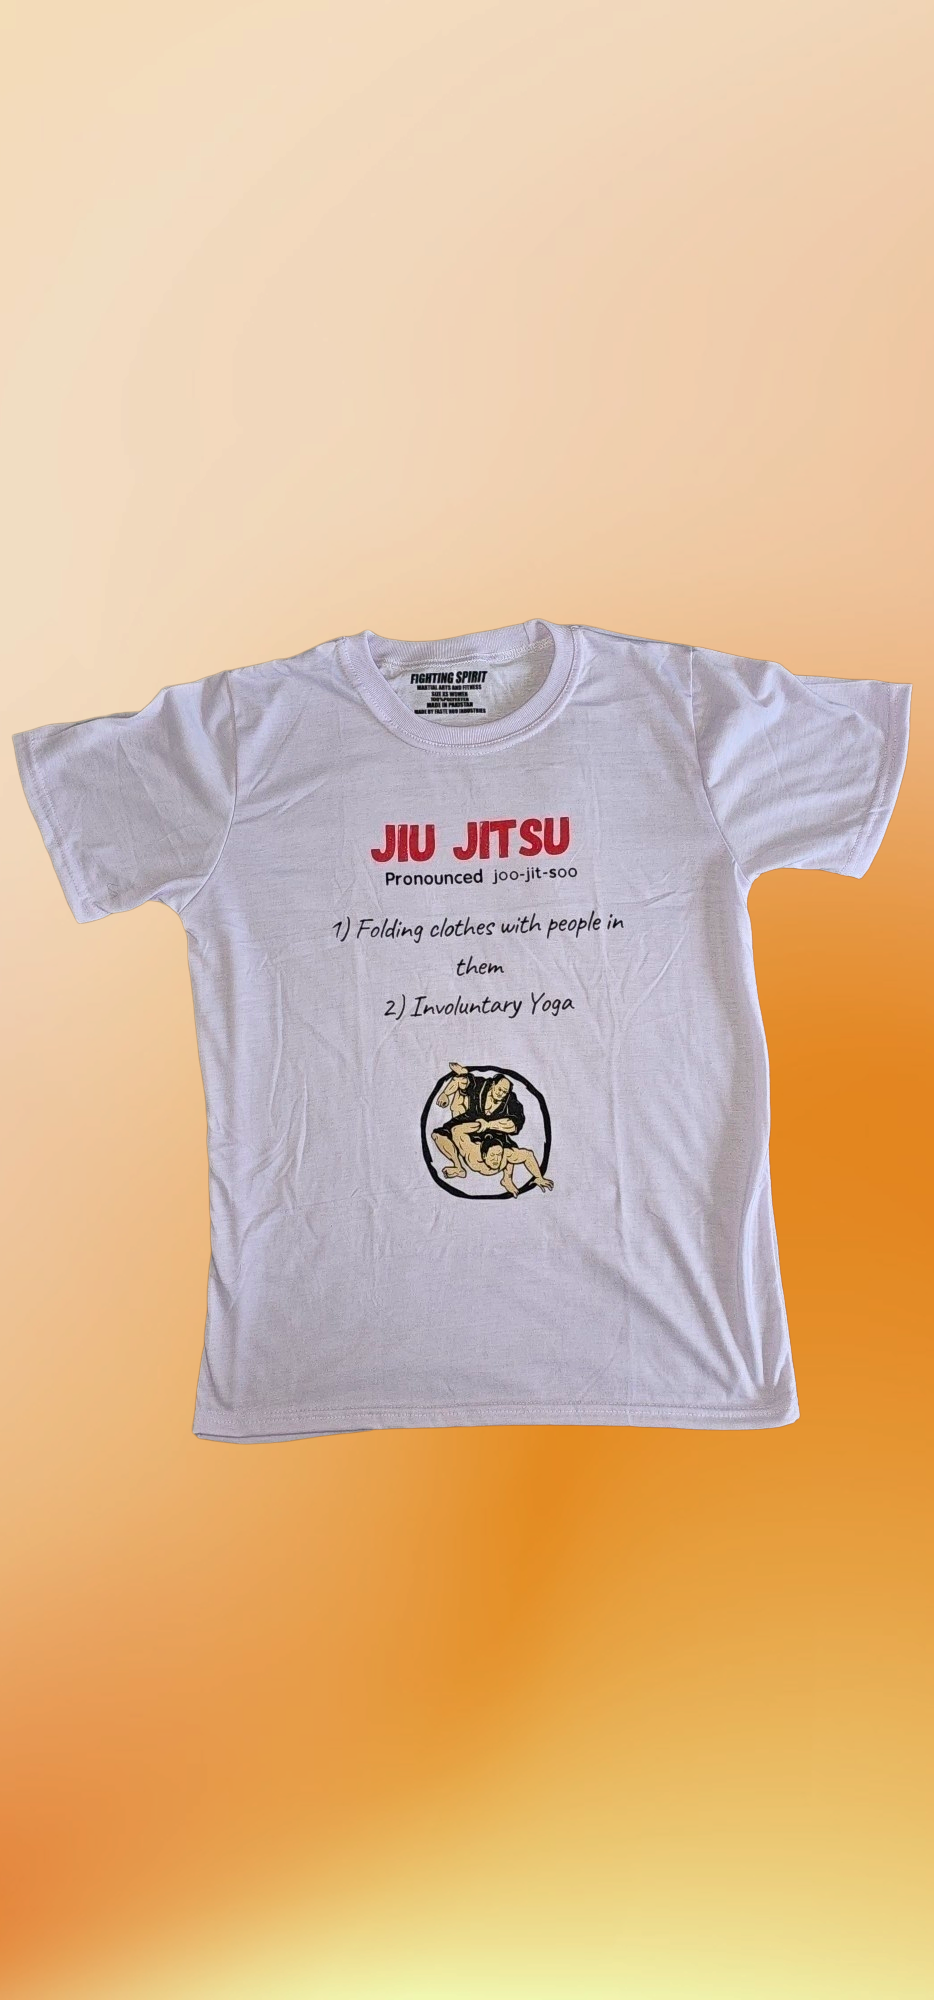 Jiu Jitsu Definition T Shirt